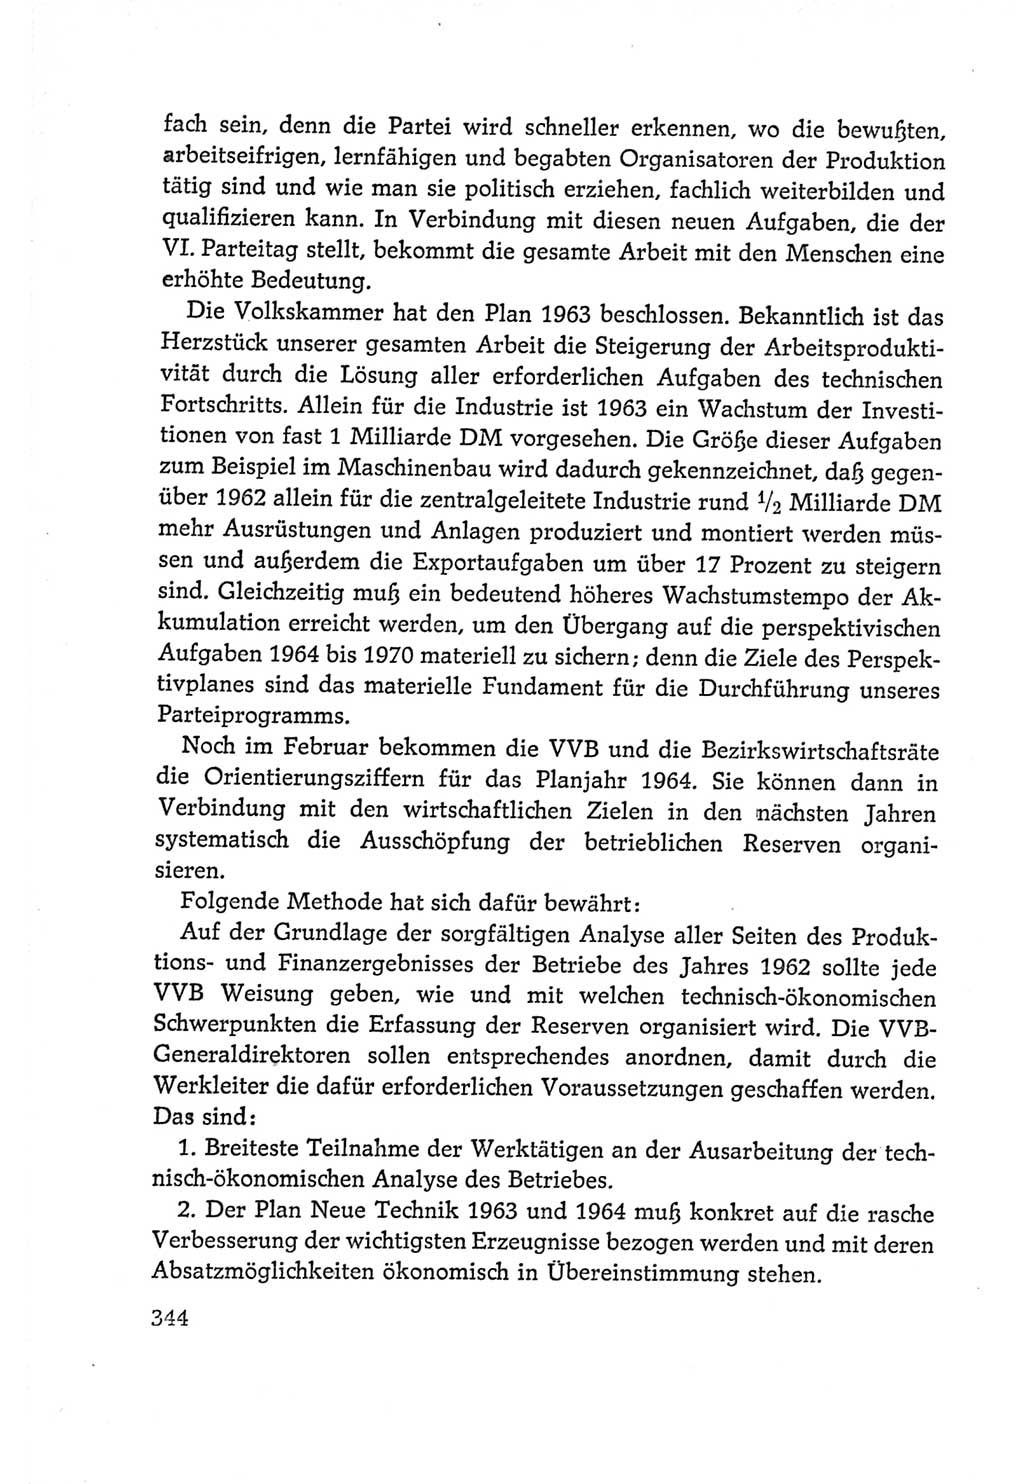 Protokoll der Verhandlungen des Ⅵ. Parteitages der Sozialistischen Einheitspartei Deutschlands (SED) [Deutsche Demokratische Republik (DDR)] 1963, Band Ⅰ, Seite 344 (Prot. Verh. Ⅵ. PT SED DDR 1963, Bd. Ⅰ, S. 344)